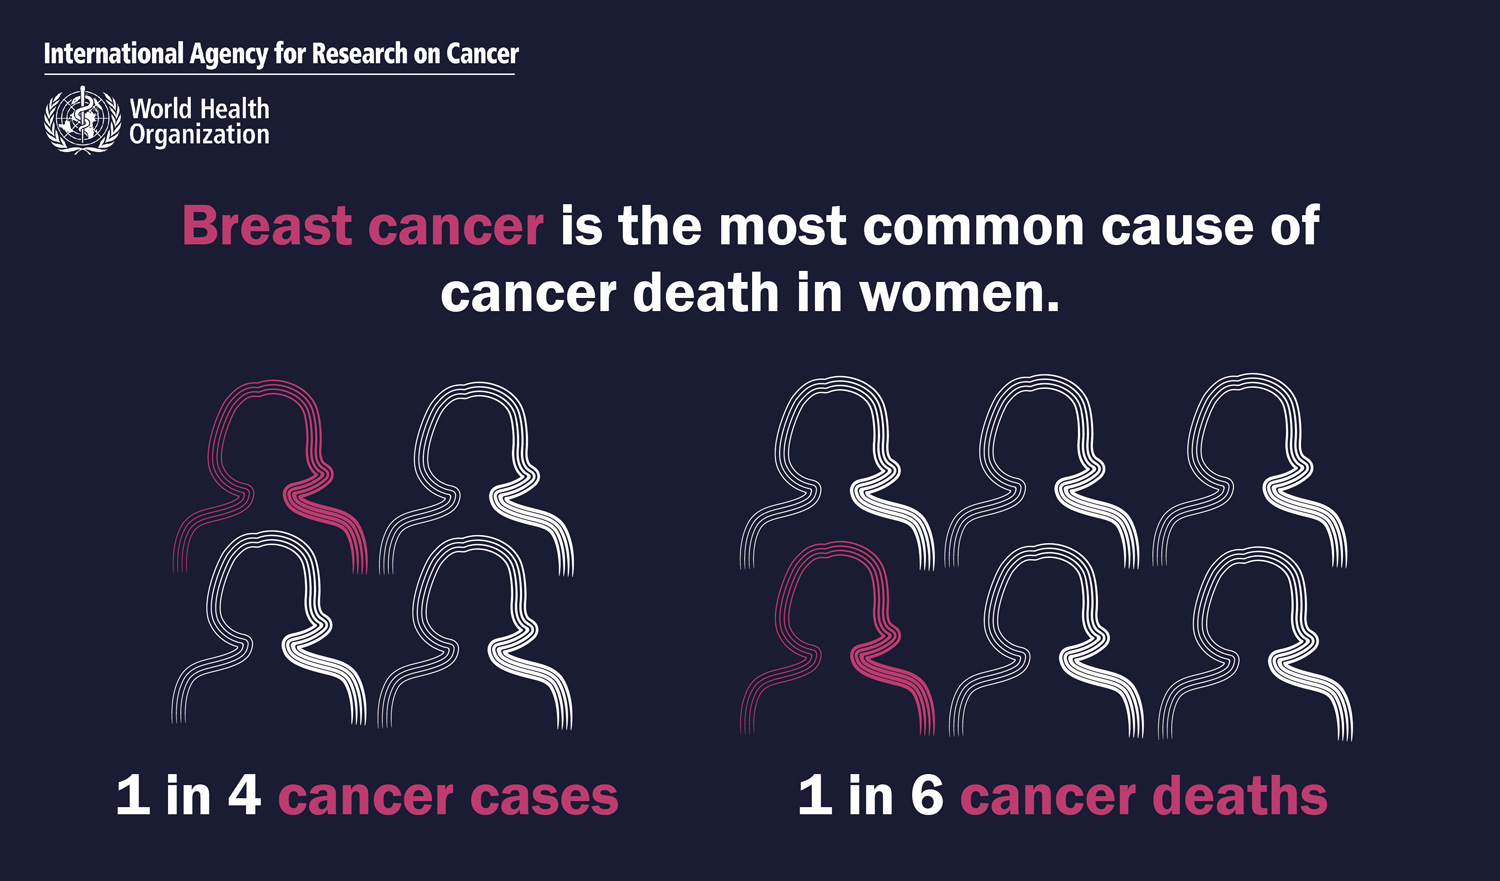 ciri-ciri kanker payudara gejala kanker payudara tanda-tanda kanker payudara benjolan kanker payudara seperti apa gambar kanker payudara